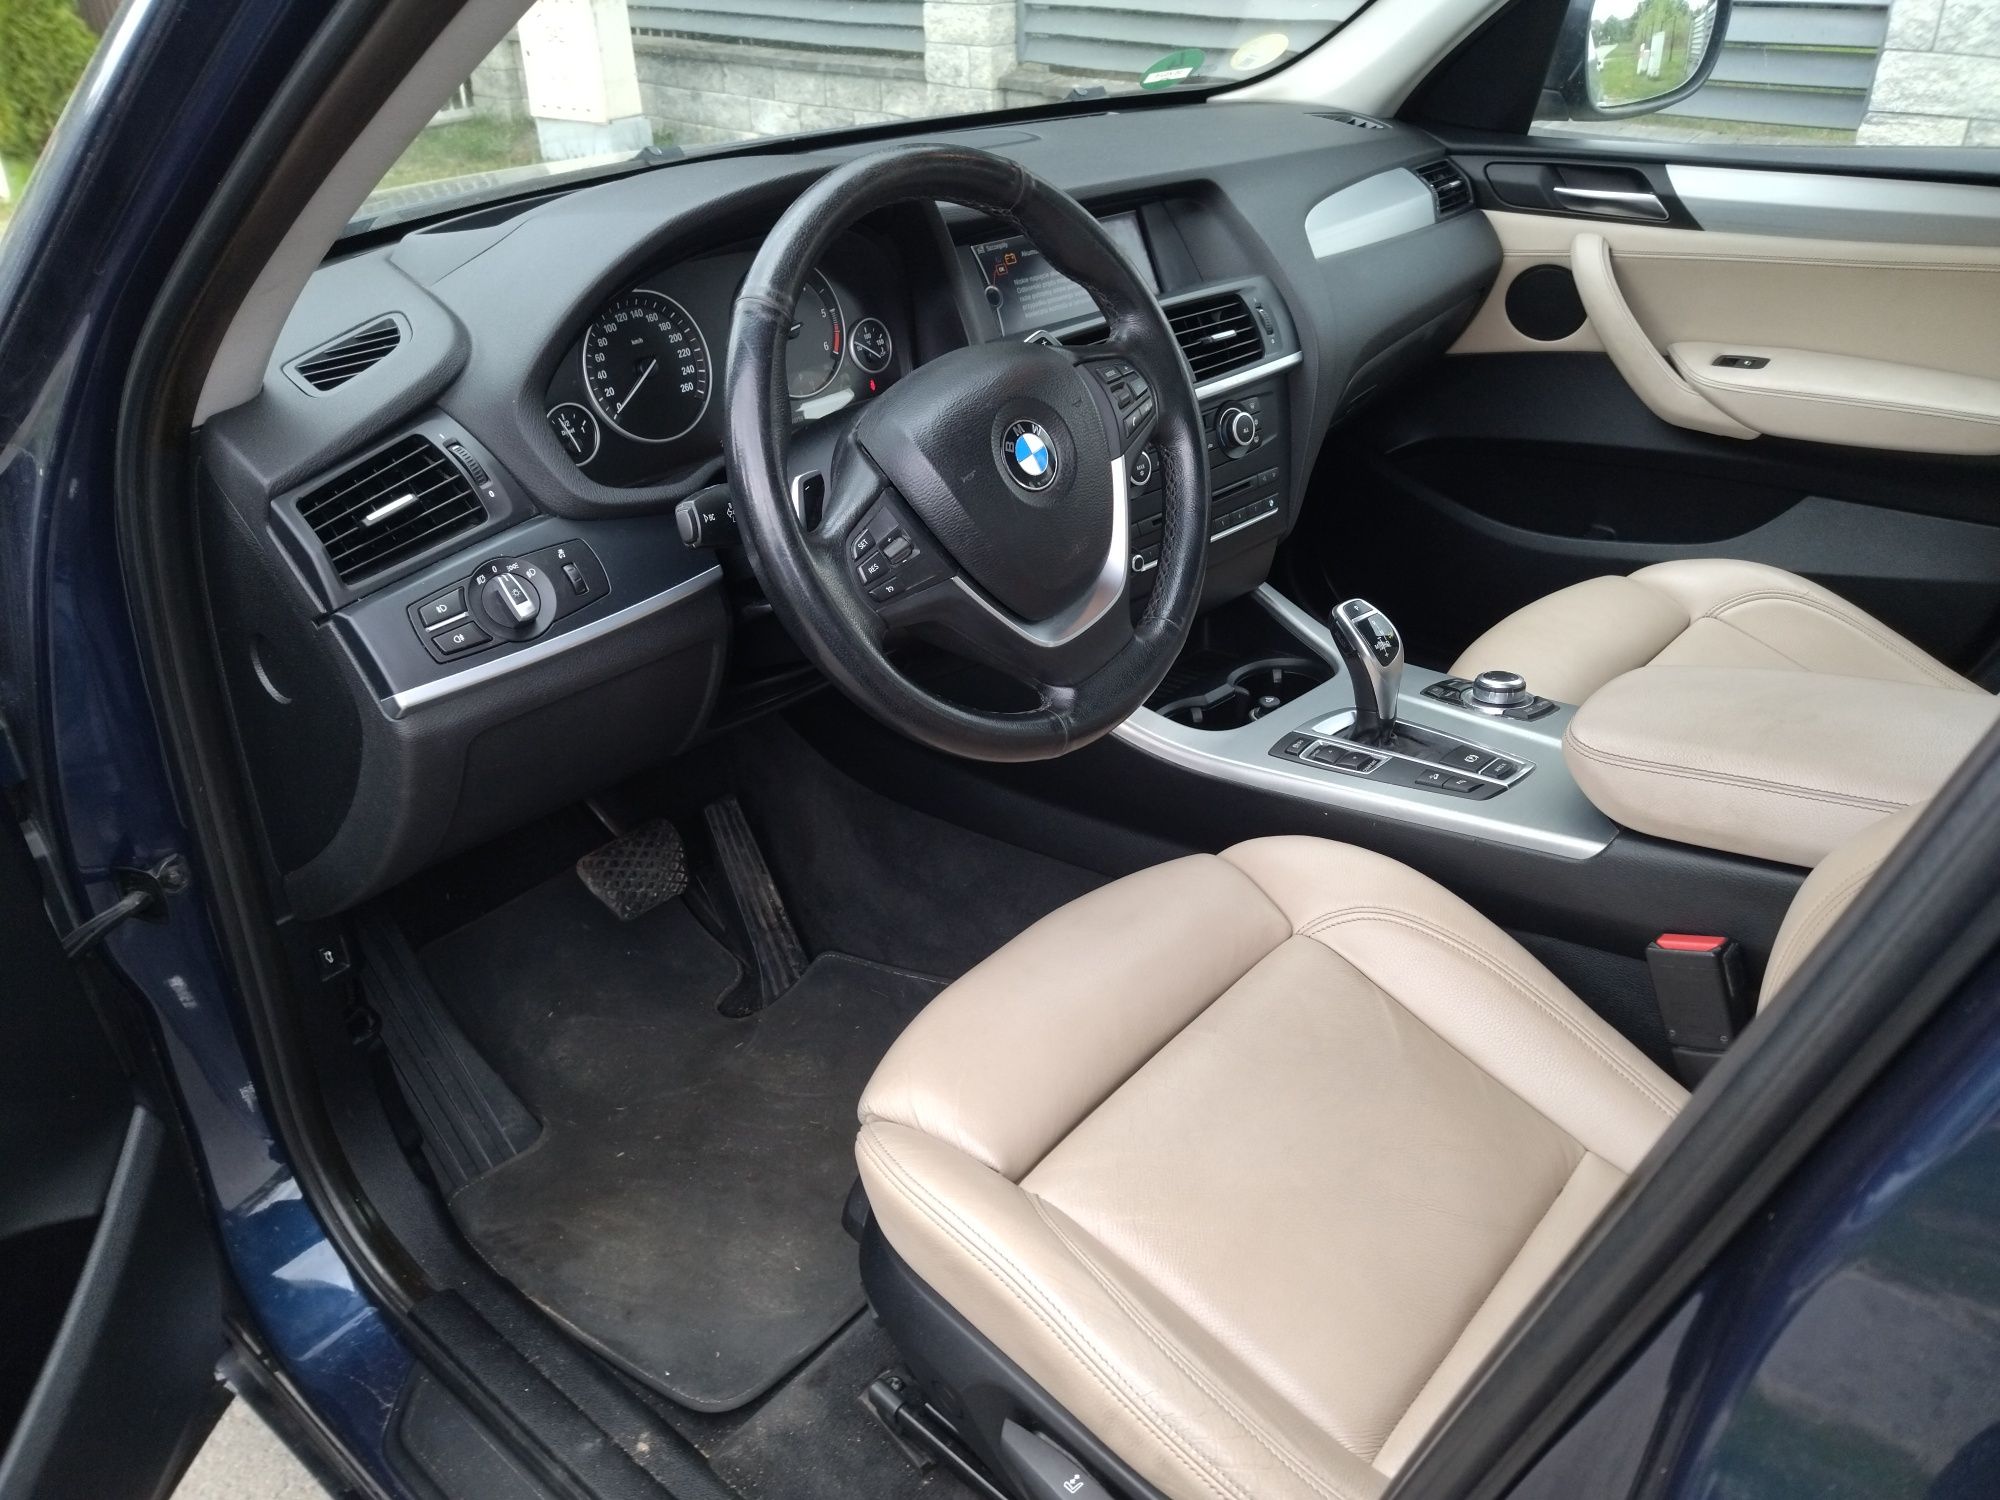 BMW 3,0  2012 r  313 KM   4x4  Biturbo .  Świeżo sprowadzony